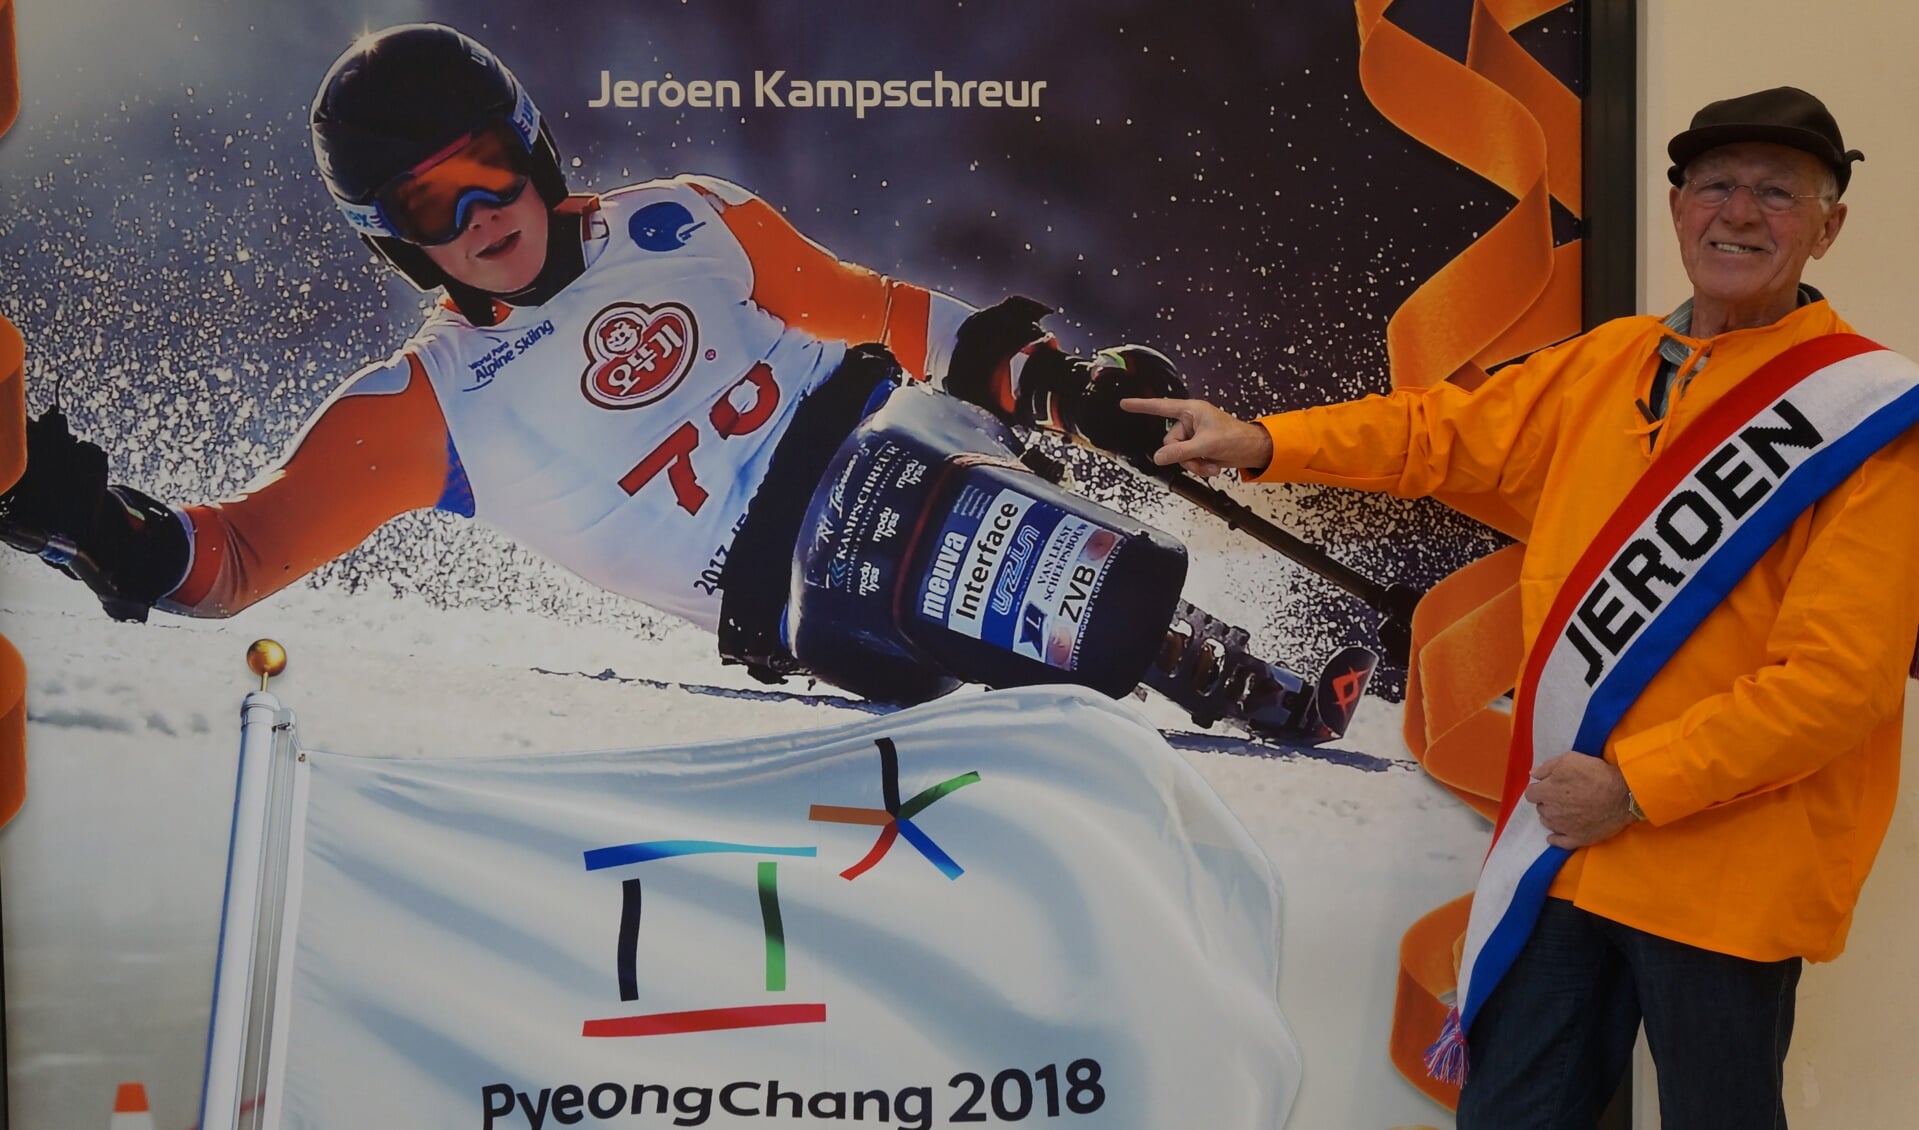 Piet van Leeuwen bij de grote foto van zijn kleinzoon Jeroen Kampschreur die hangt in de etalage van Sport2000 in Winkelhof. 